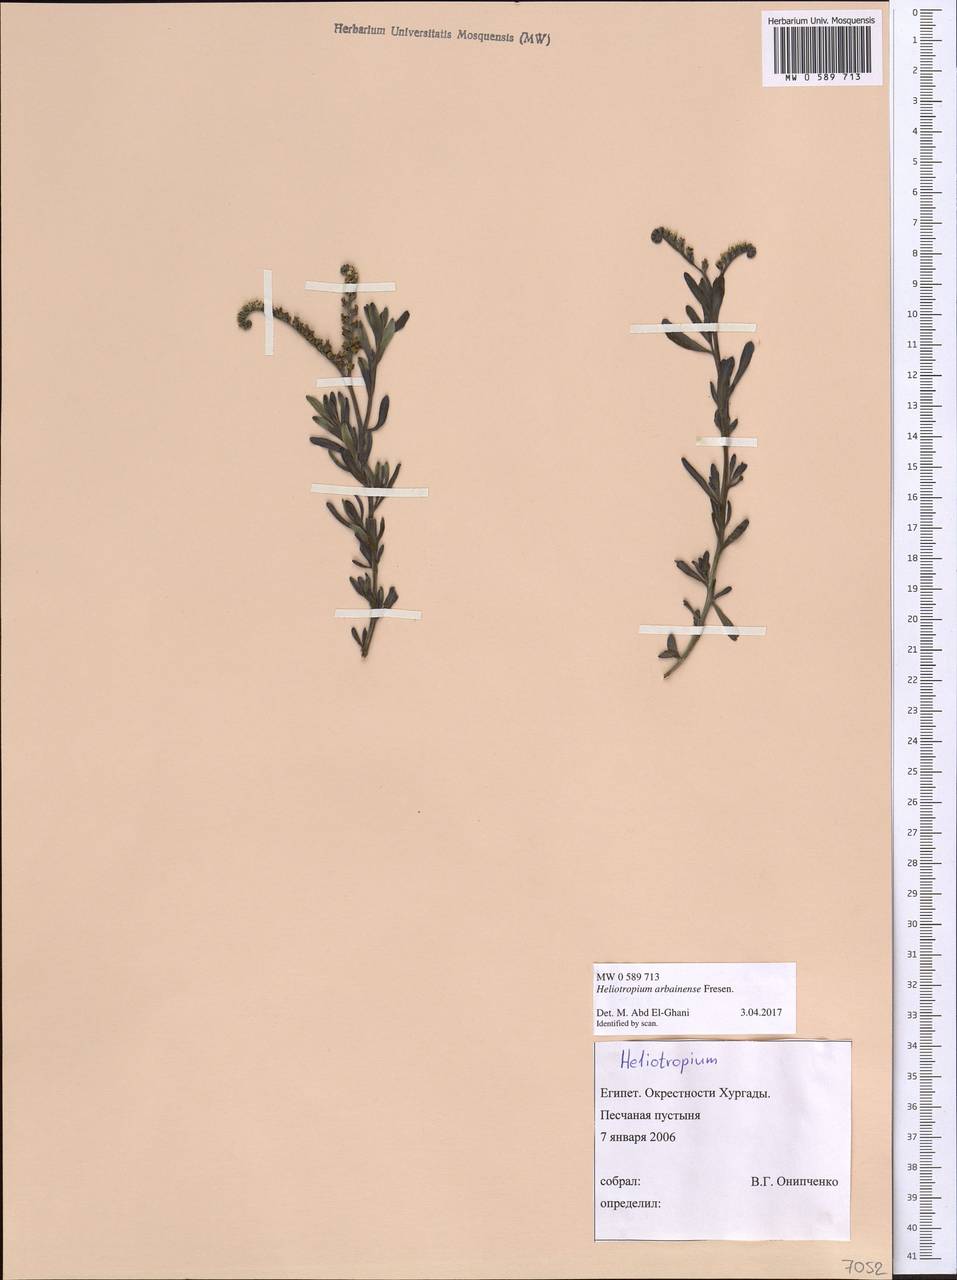 Heliotropium arbainense Fresen., Africa (AFR) (Egypt)